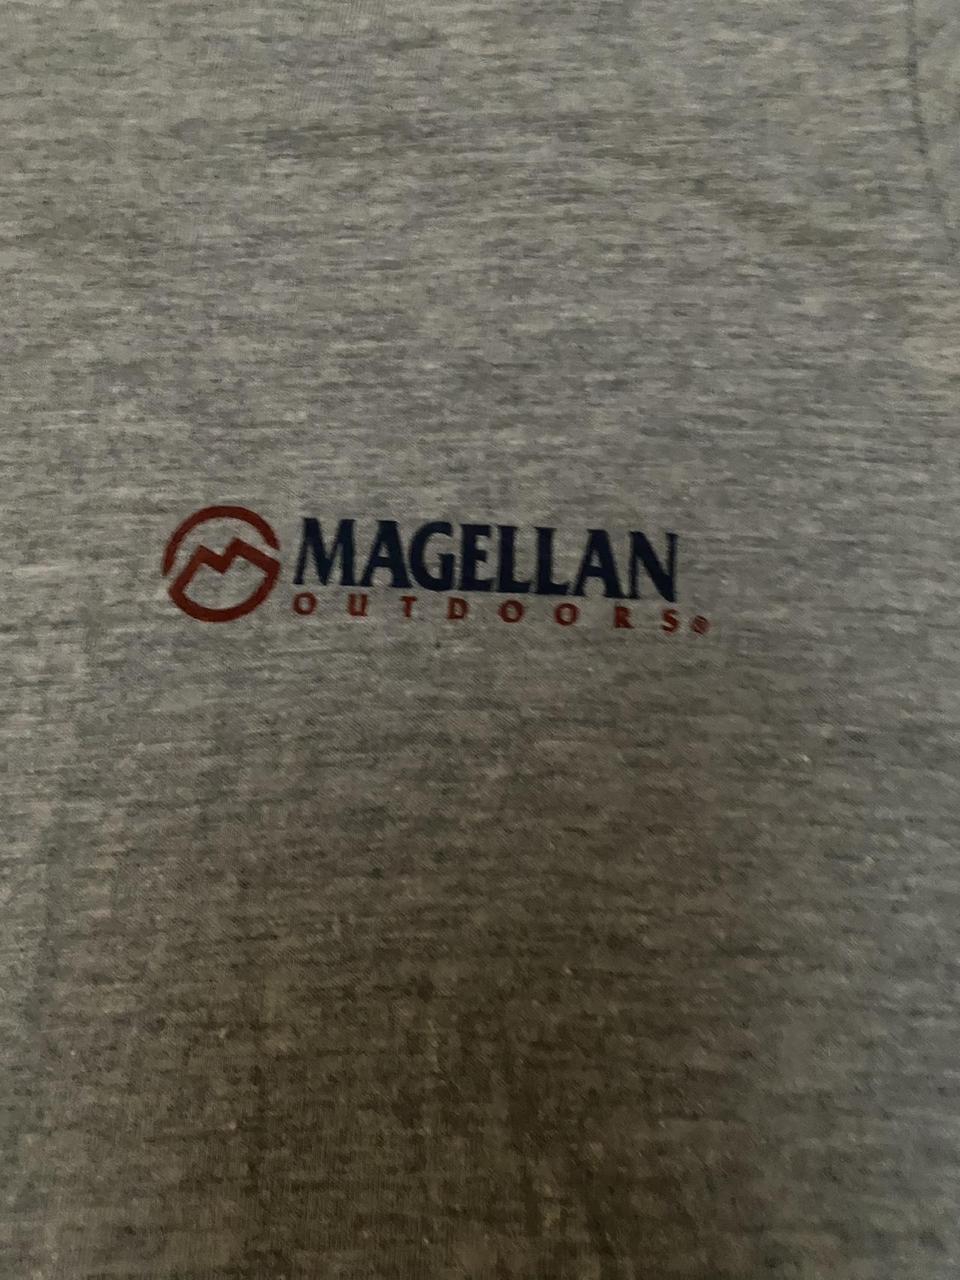 Magellan DriFit Shirt - Men's Small/Women's Medium. - Depop